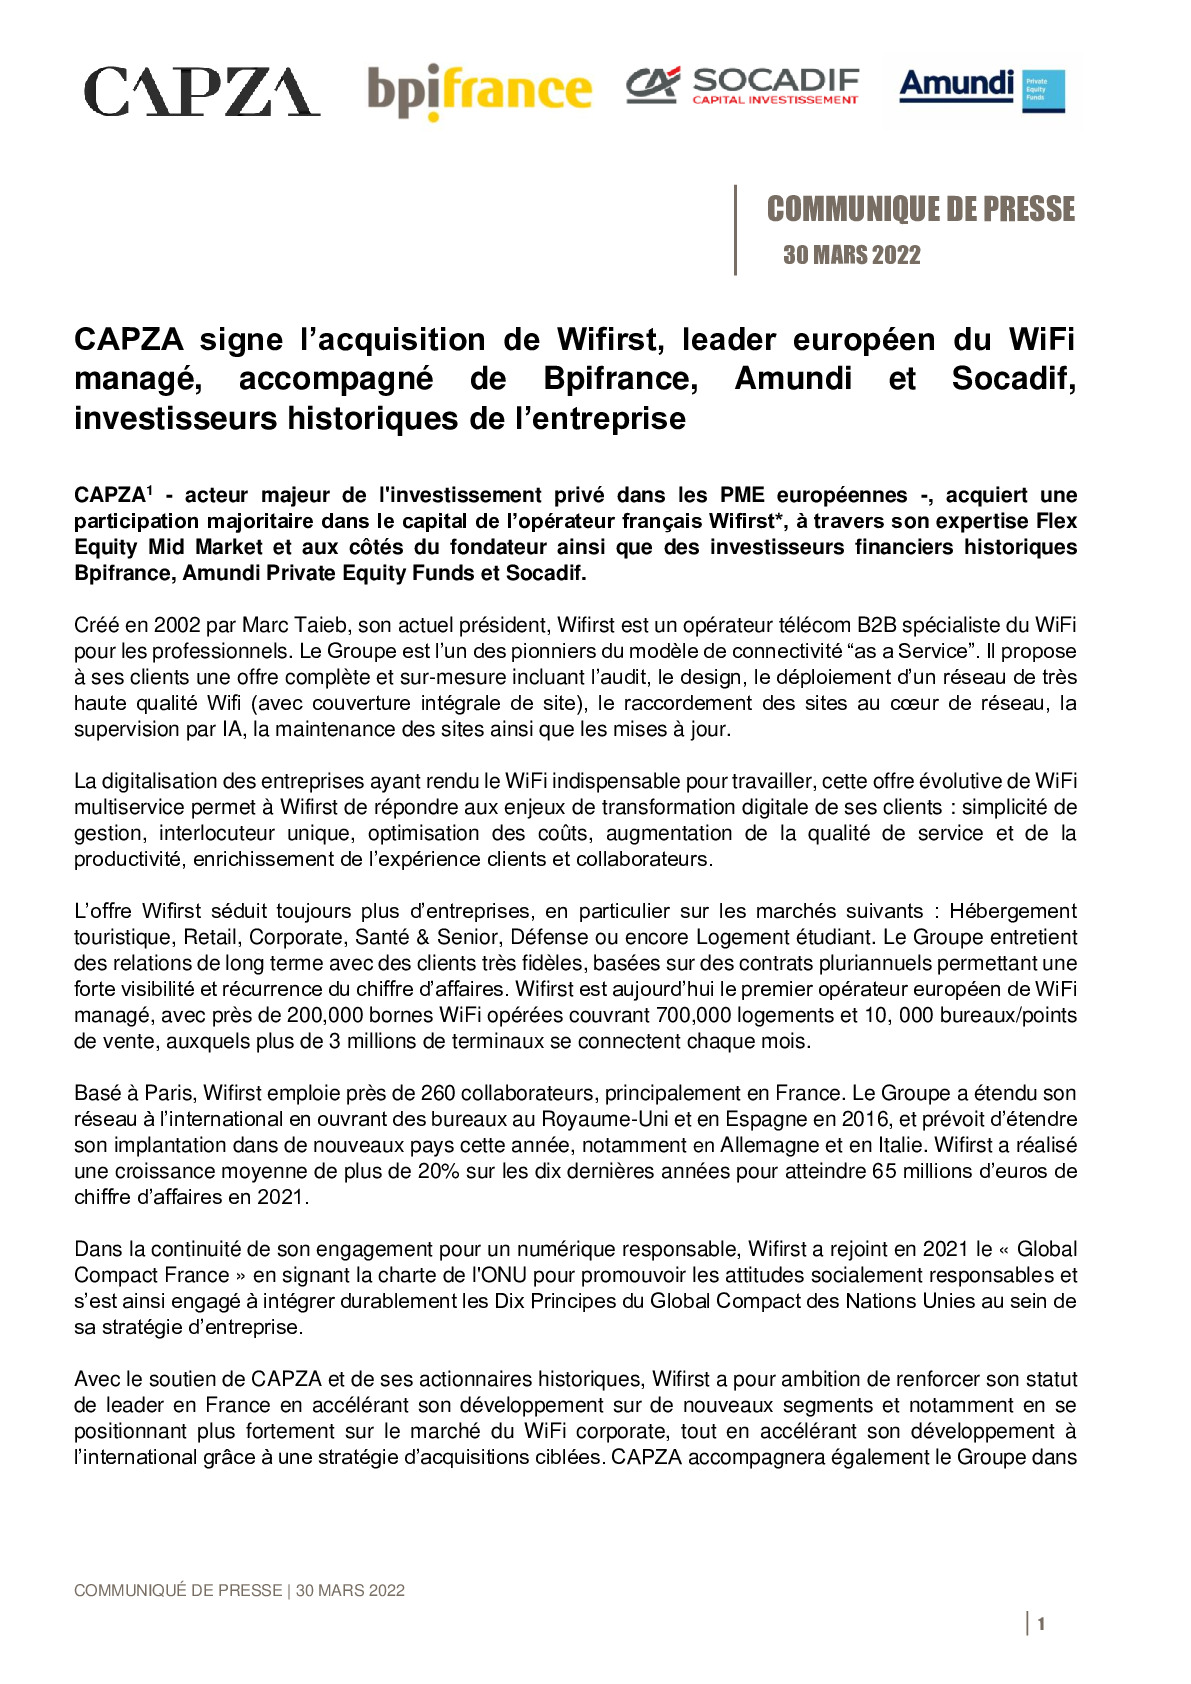 2022 03 30 – CP -CAPZA signe lacquisition de Wifirst leader europeen du WiFi manage accompagne de Bpifrance Amundi et Socadif investisseurs historiques de lentreprise-pdf